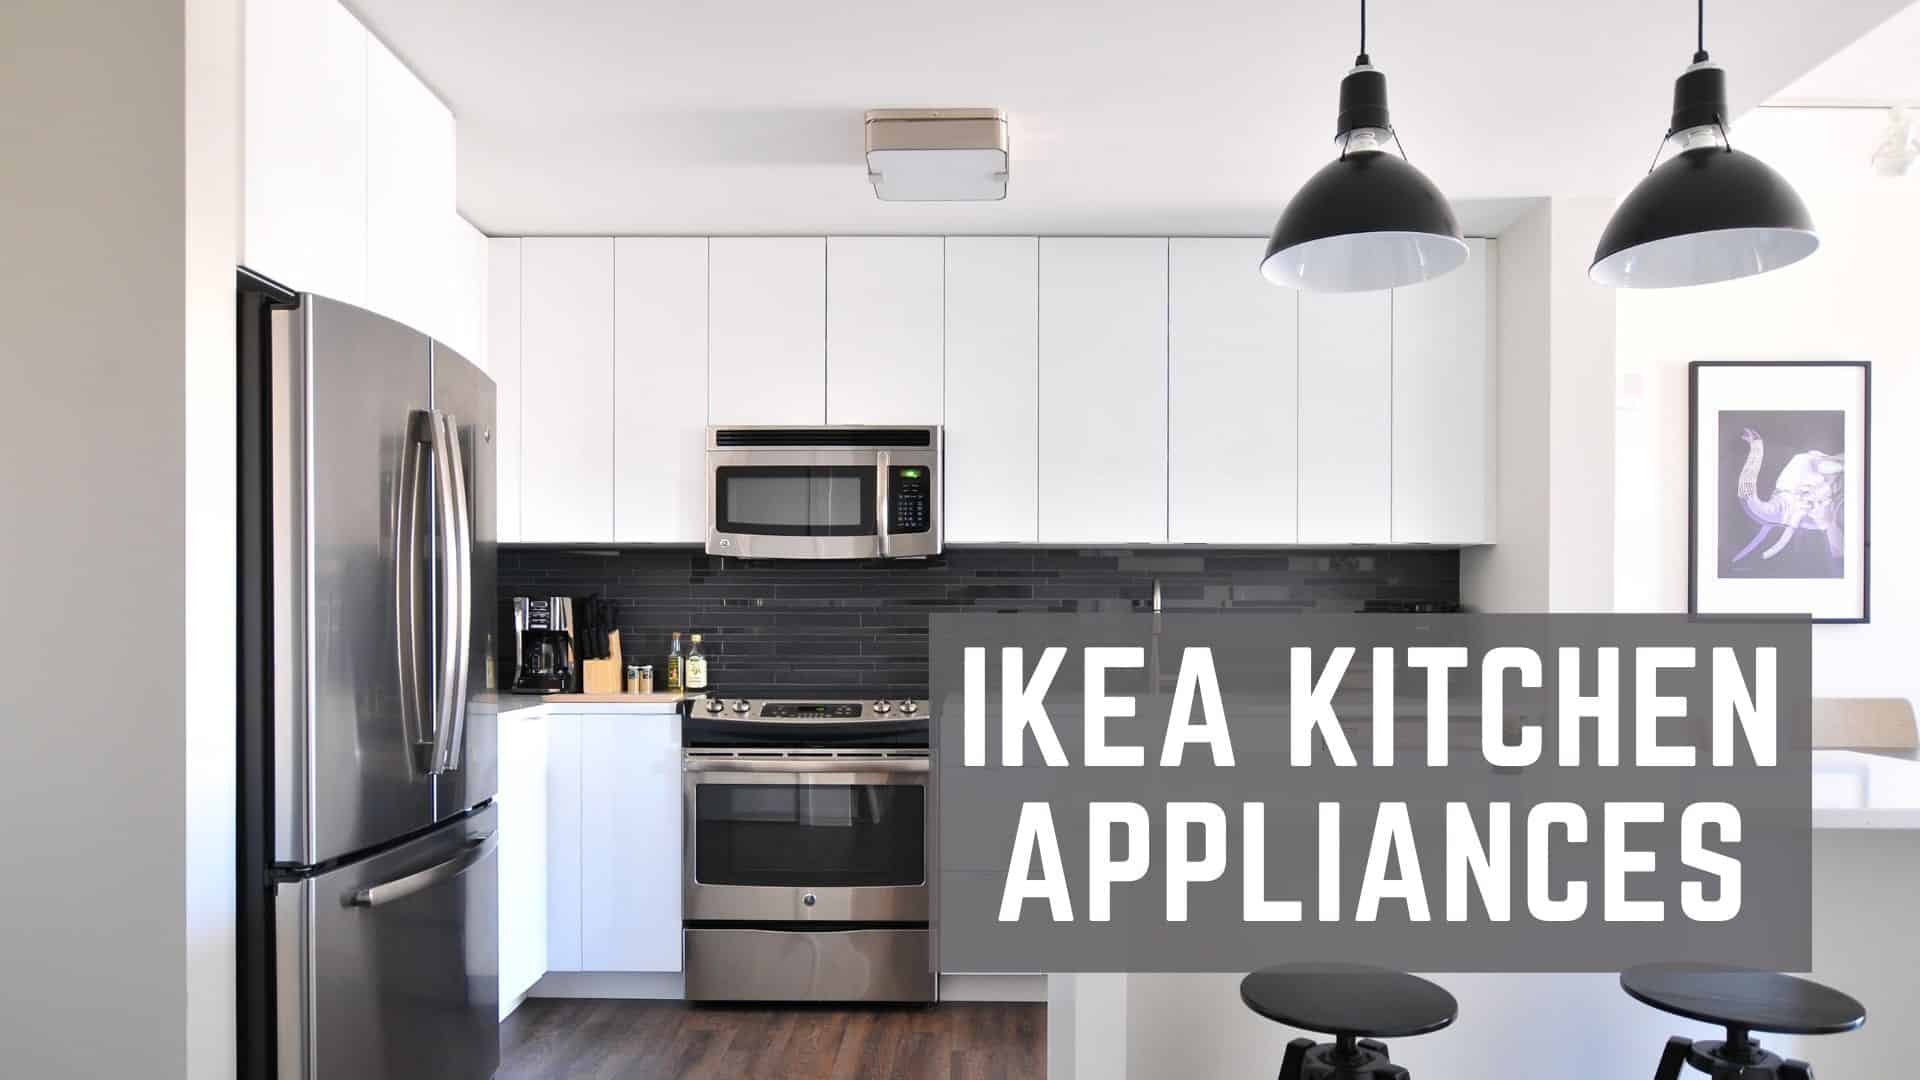 HUVUDSAKLIG Built-in microwave, stainless steel color - IKEA